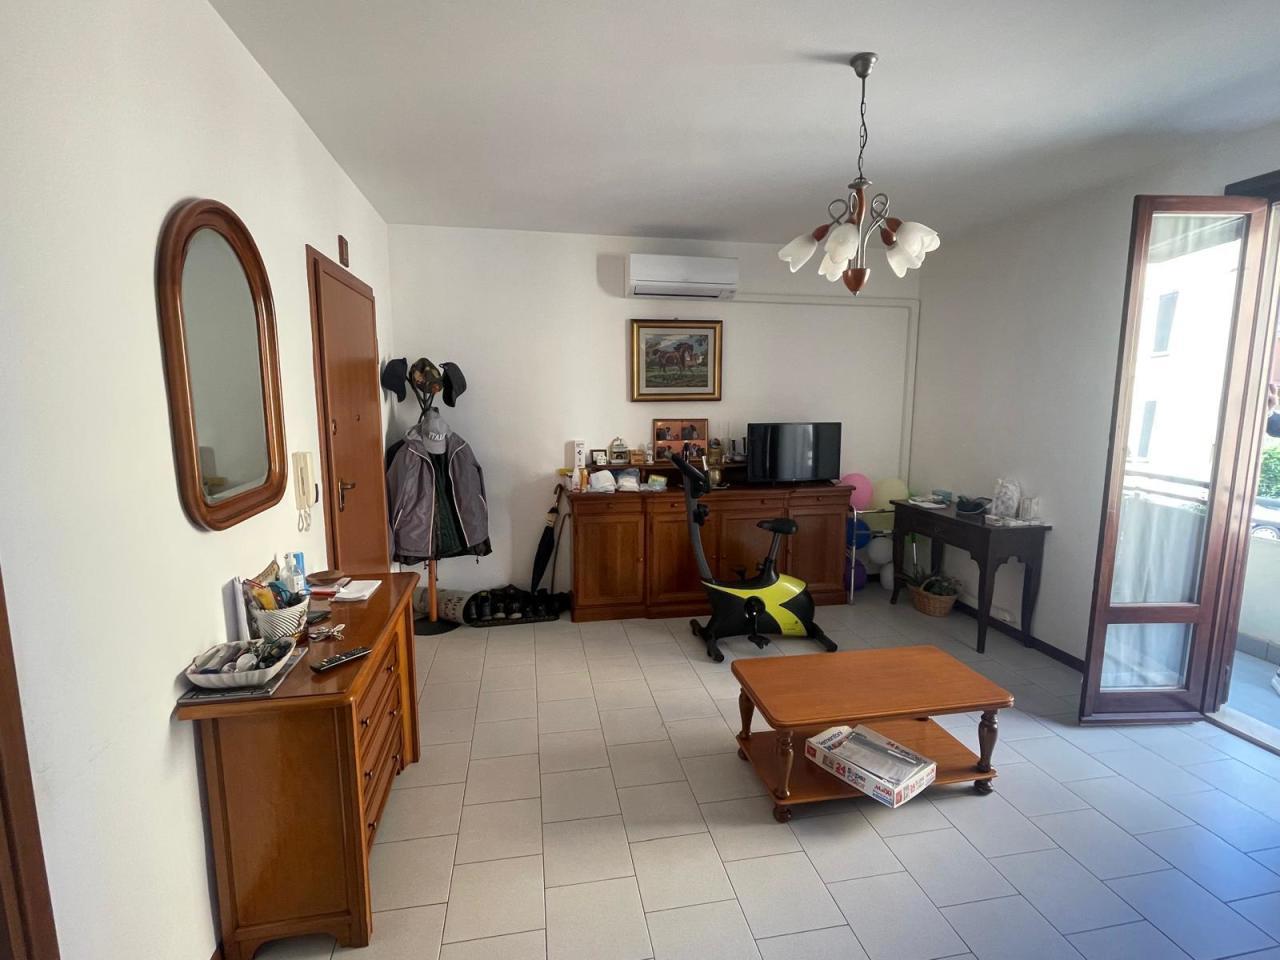 Renta Habitaciones y habitaciones en alquiler, Medesano foto